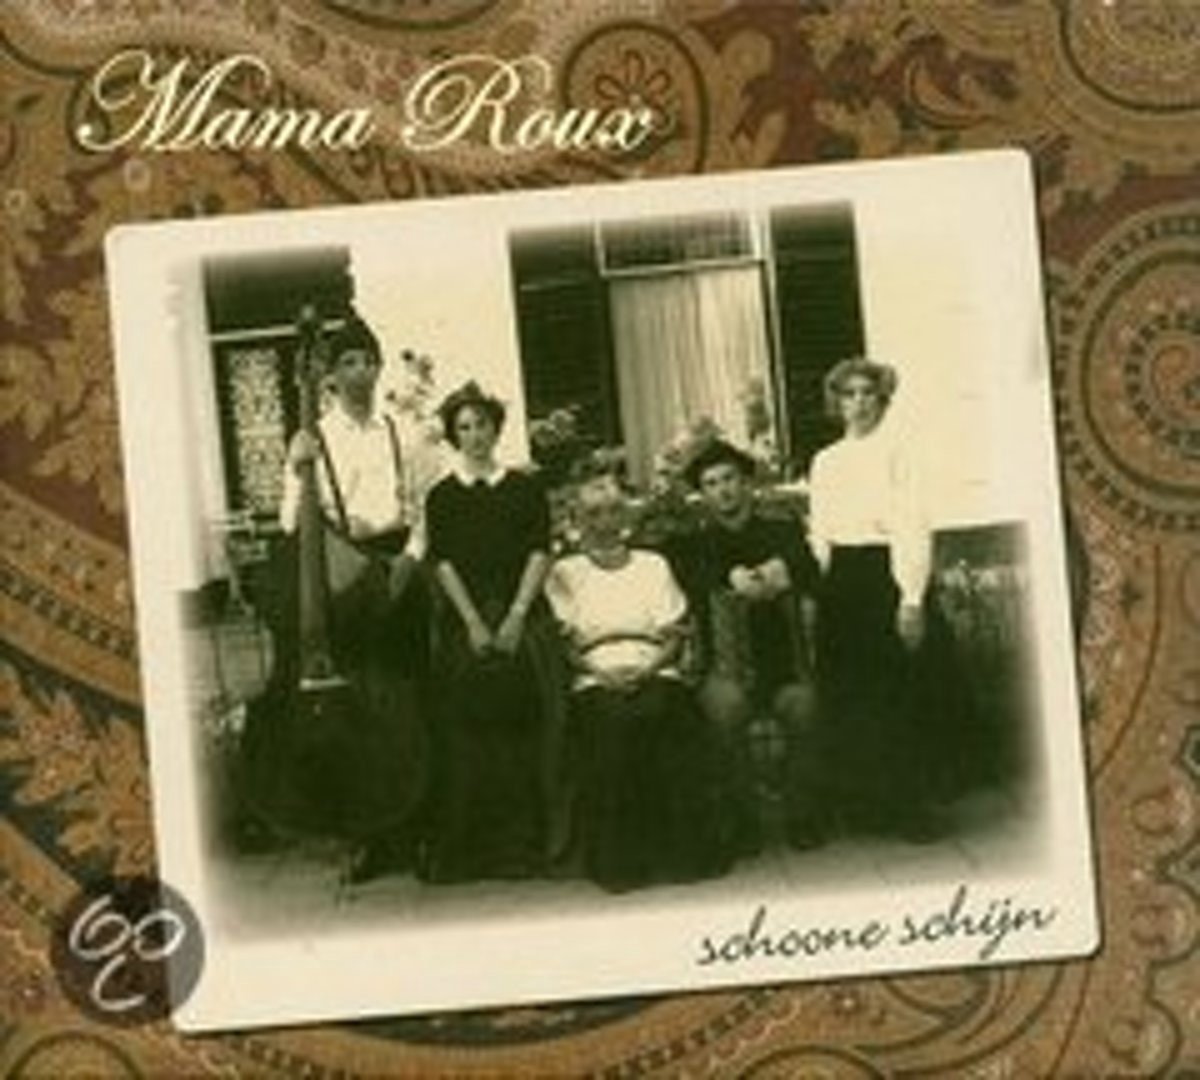 Mama Roux - Schoone Schijn (CD) - Mama Roux